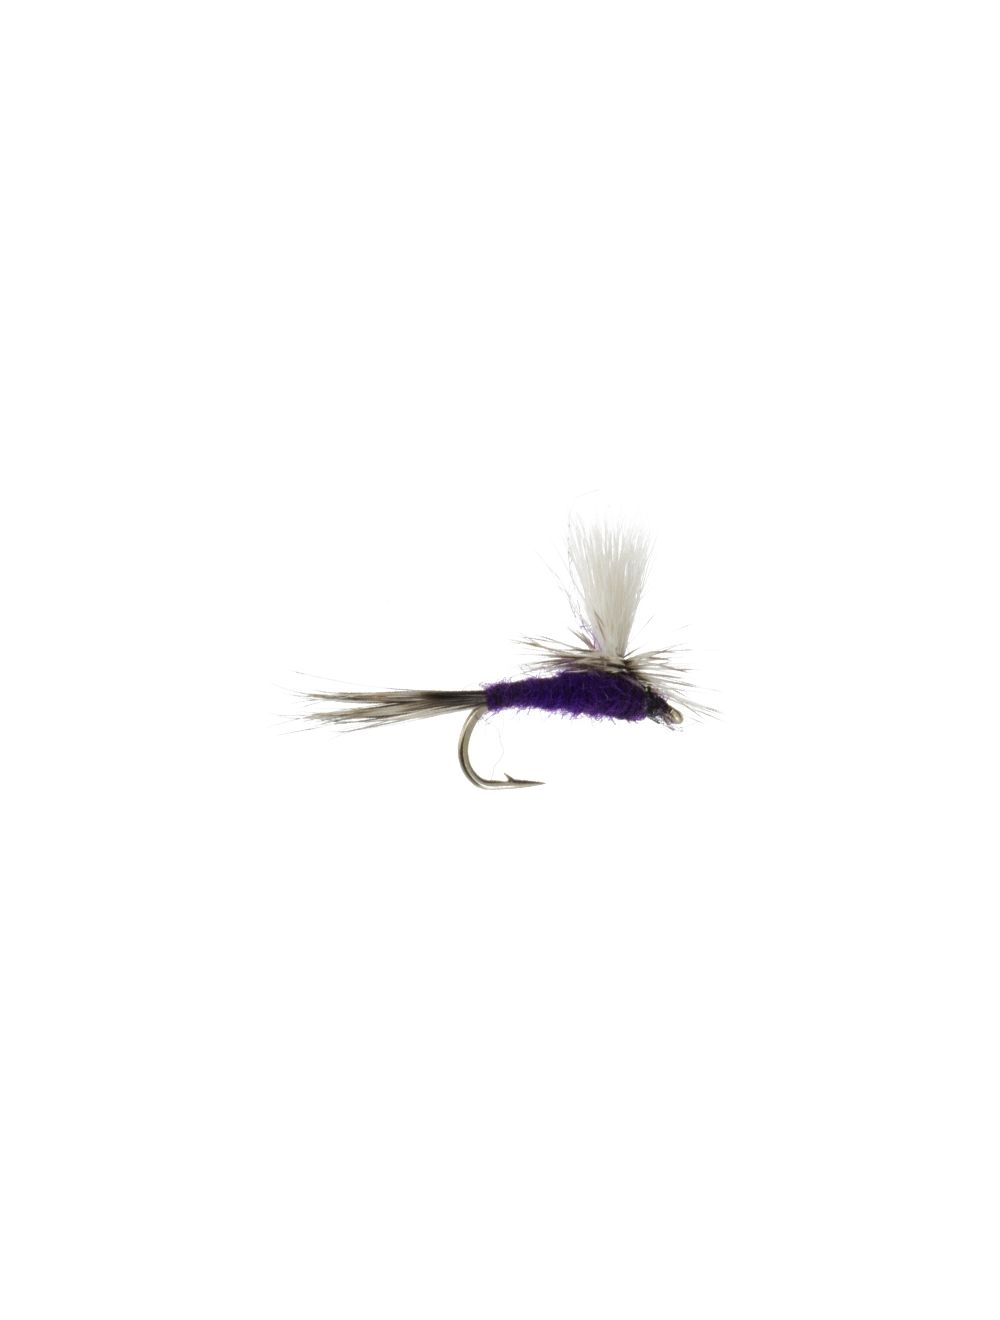 Trout Worm 5pc Pack-Purple Haze